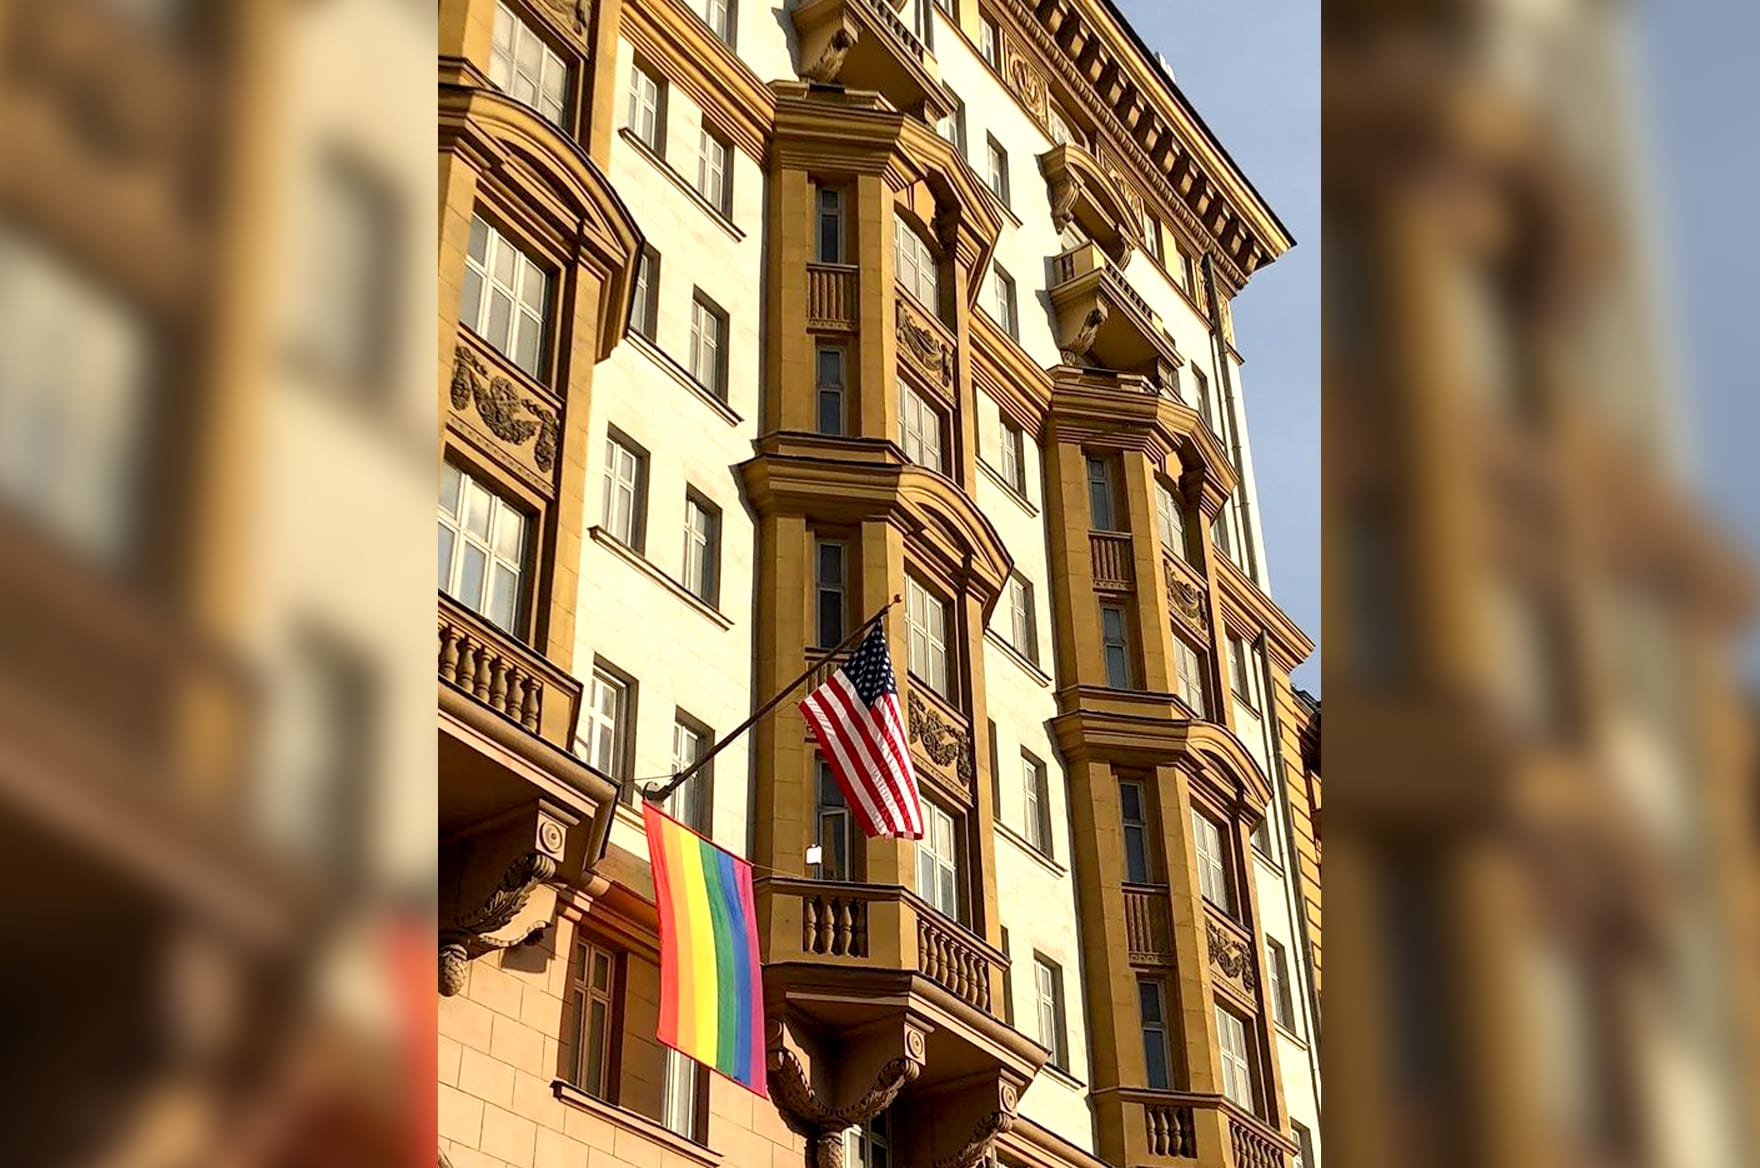 السفارة الأمريكية في موسكو ترفع "علم الفخر".. والكرملين: غير مقبول بموجب القانون